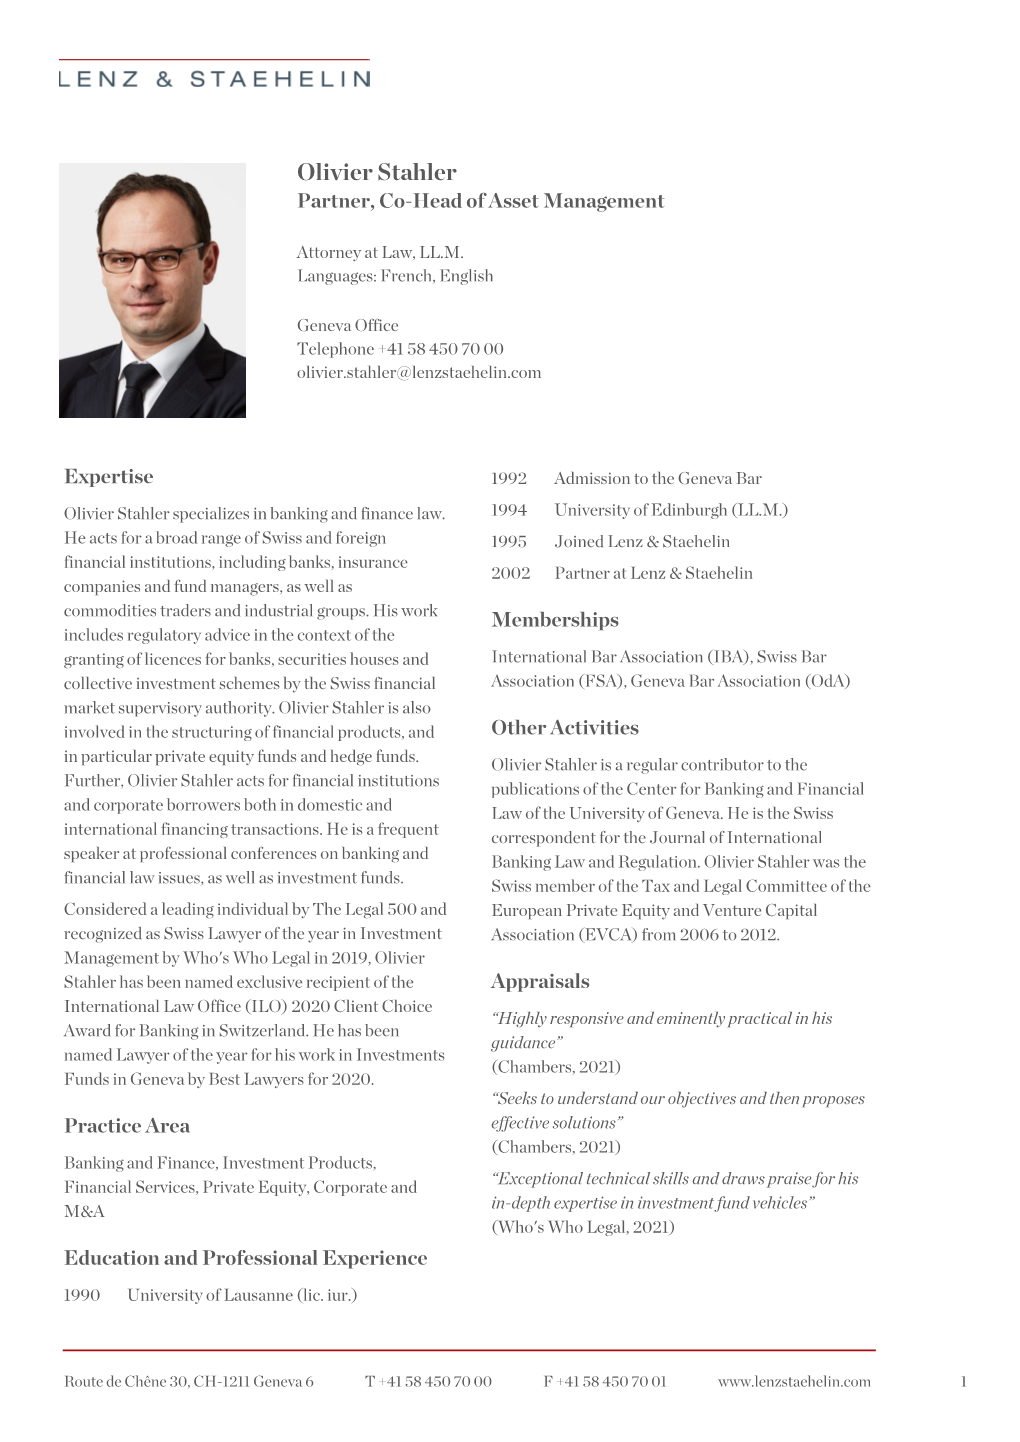 Olivier Stahler Partner, Co-Head of Asset Management